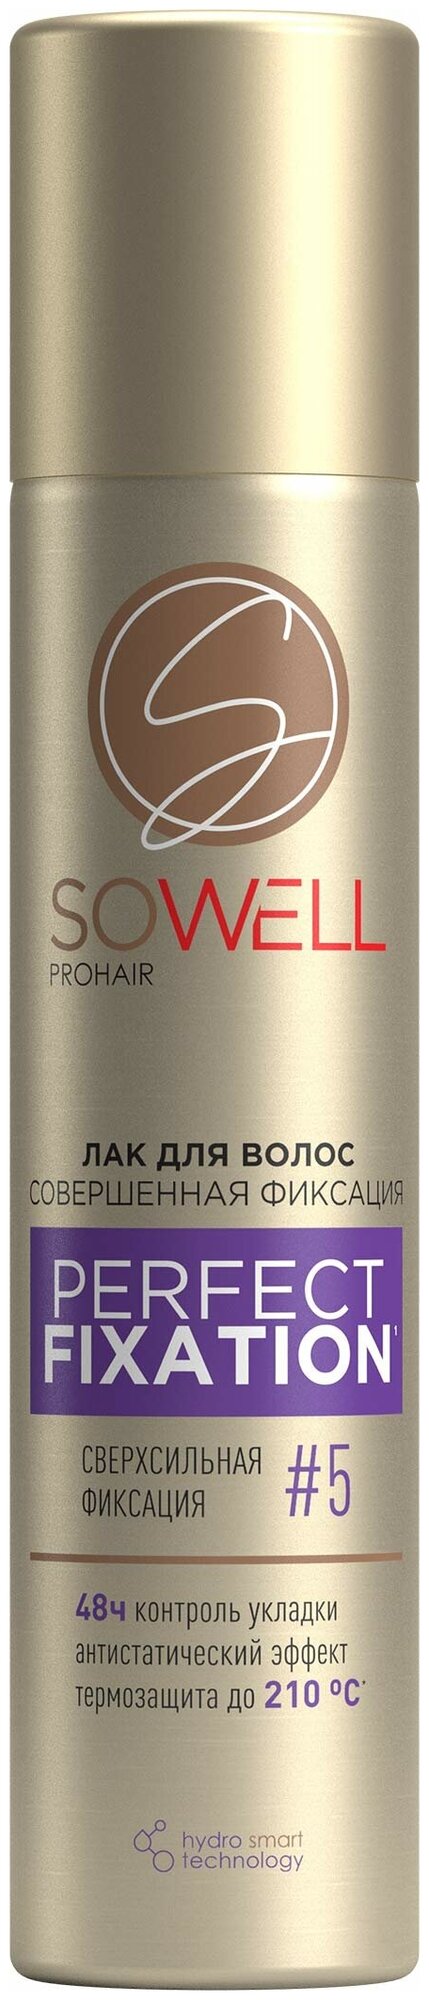 Лак для волос SoWell Perfect Fixation Совершенная фиксация сверхсильной фиксации, 75 мл